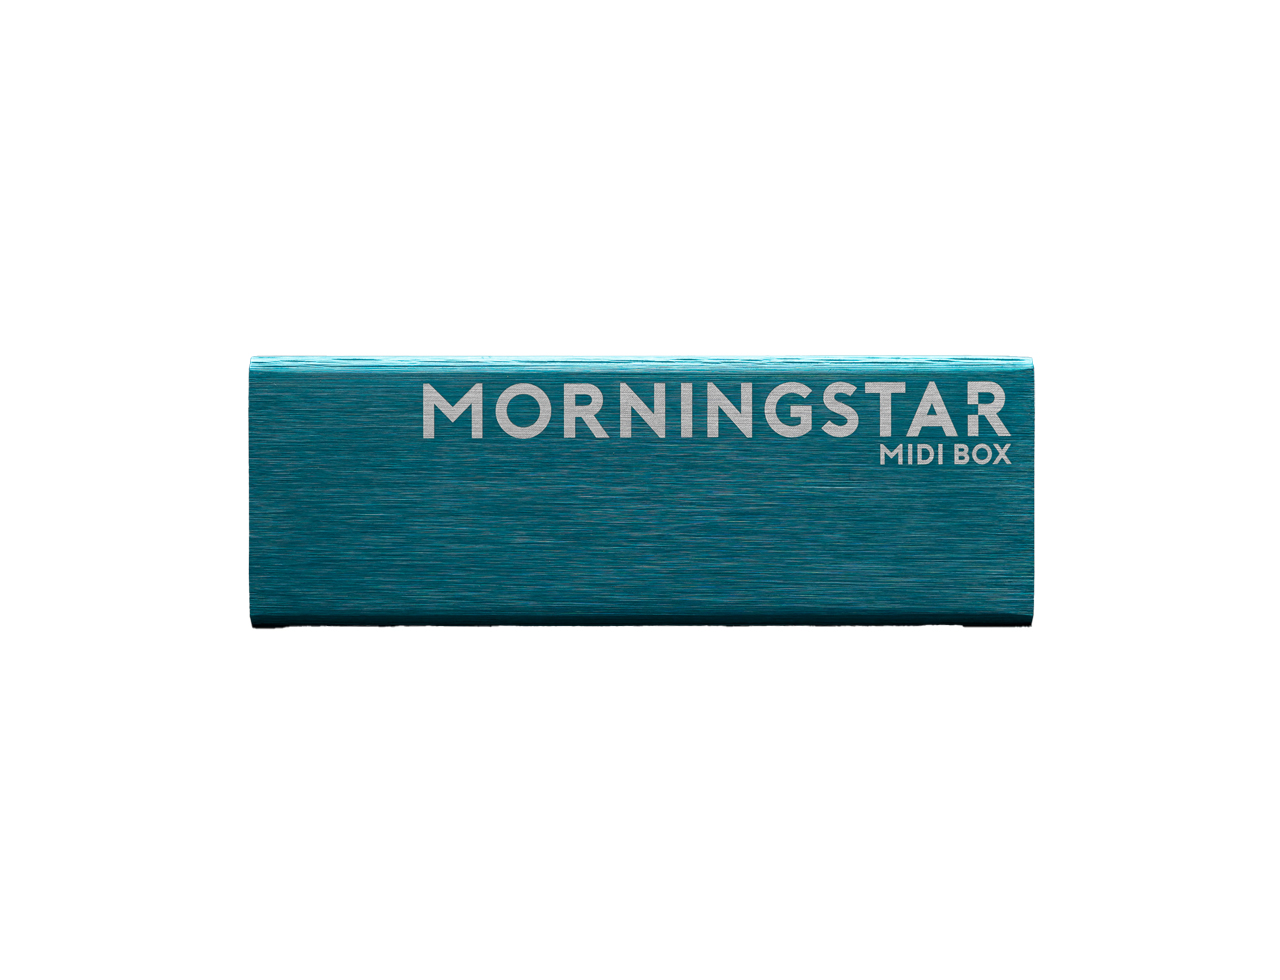 【お取寄せ商品】MORNINGSTAR Midibox (スイッチャー) (モーニングスター)